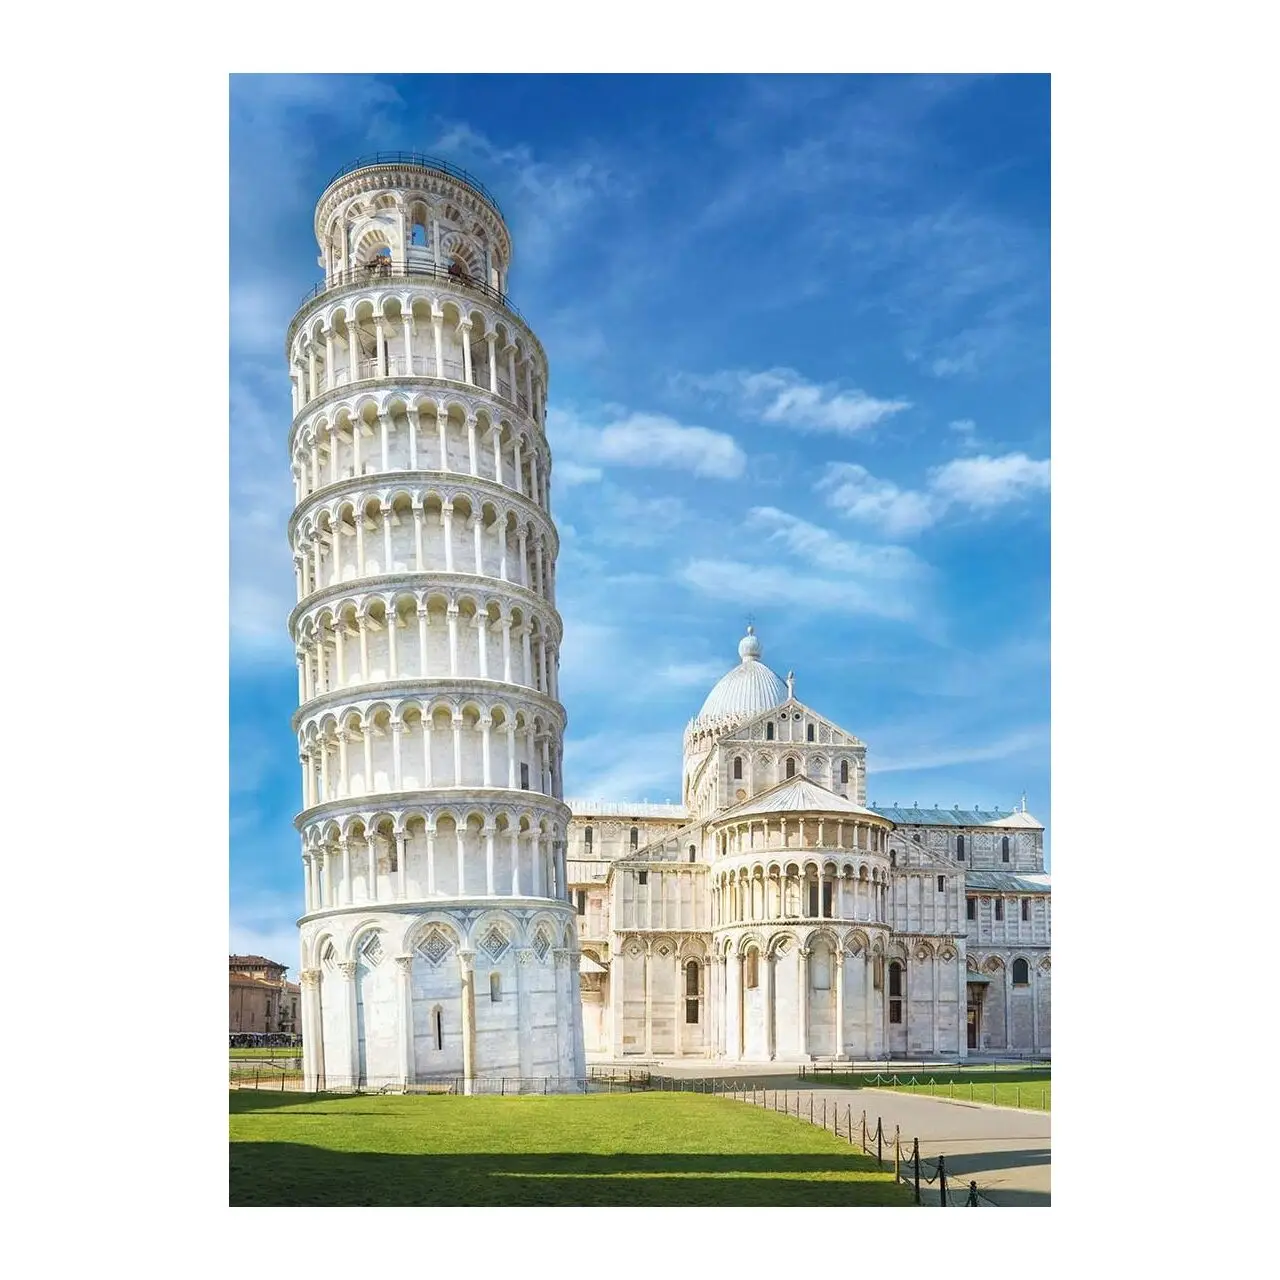 1000 Italien Puzzle Teile Pisa